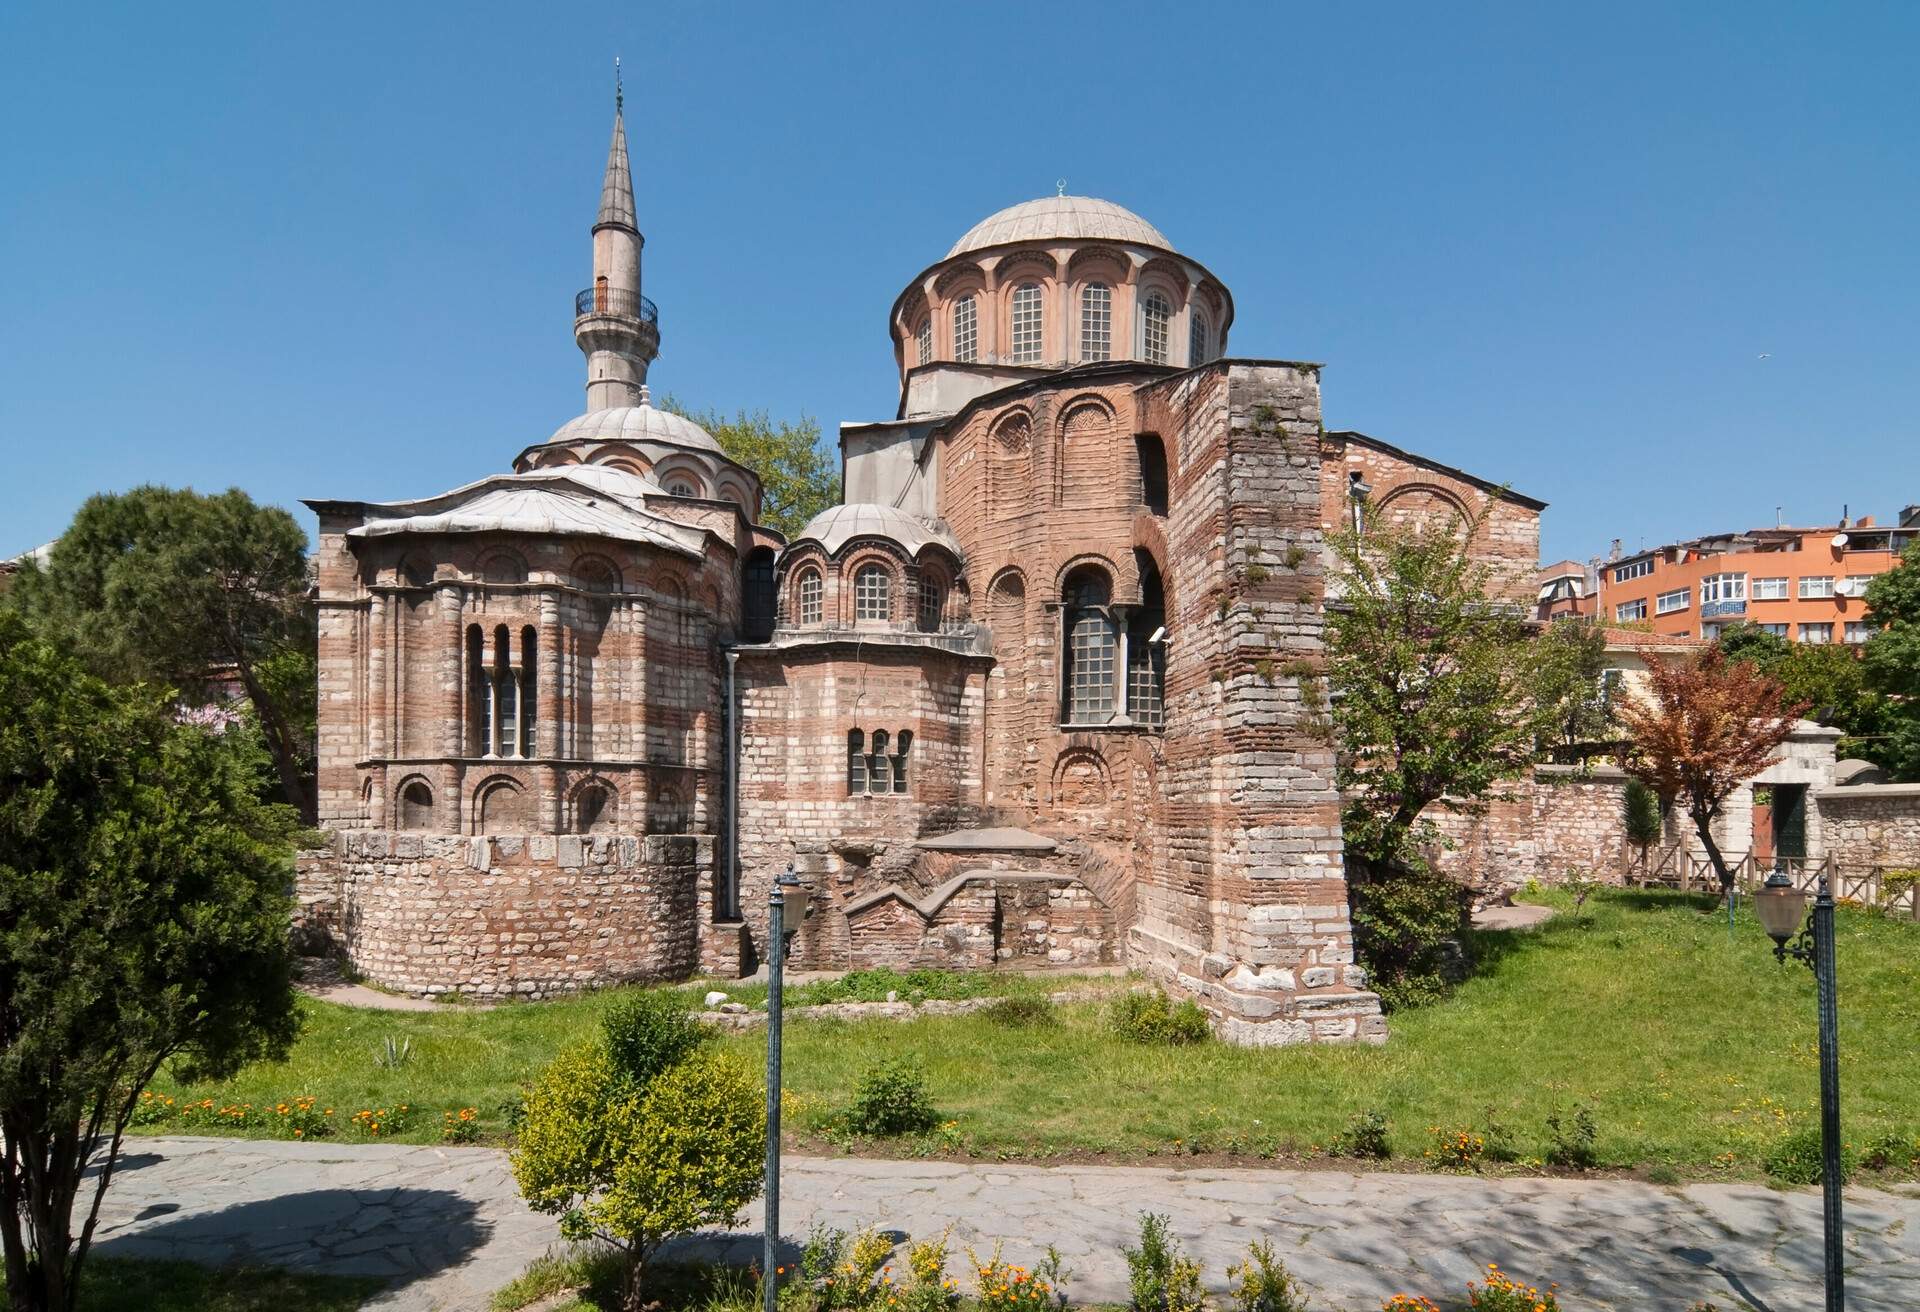 Chora church -Pammakaristos church- in Istanbul